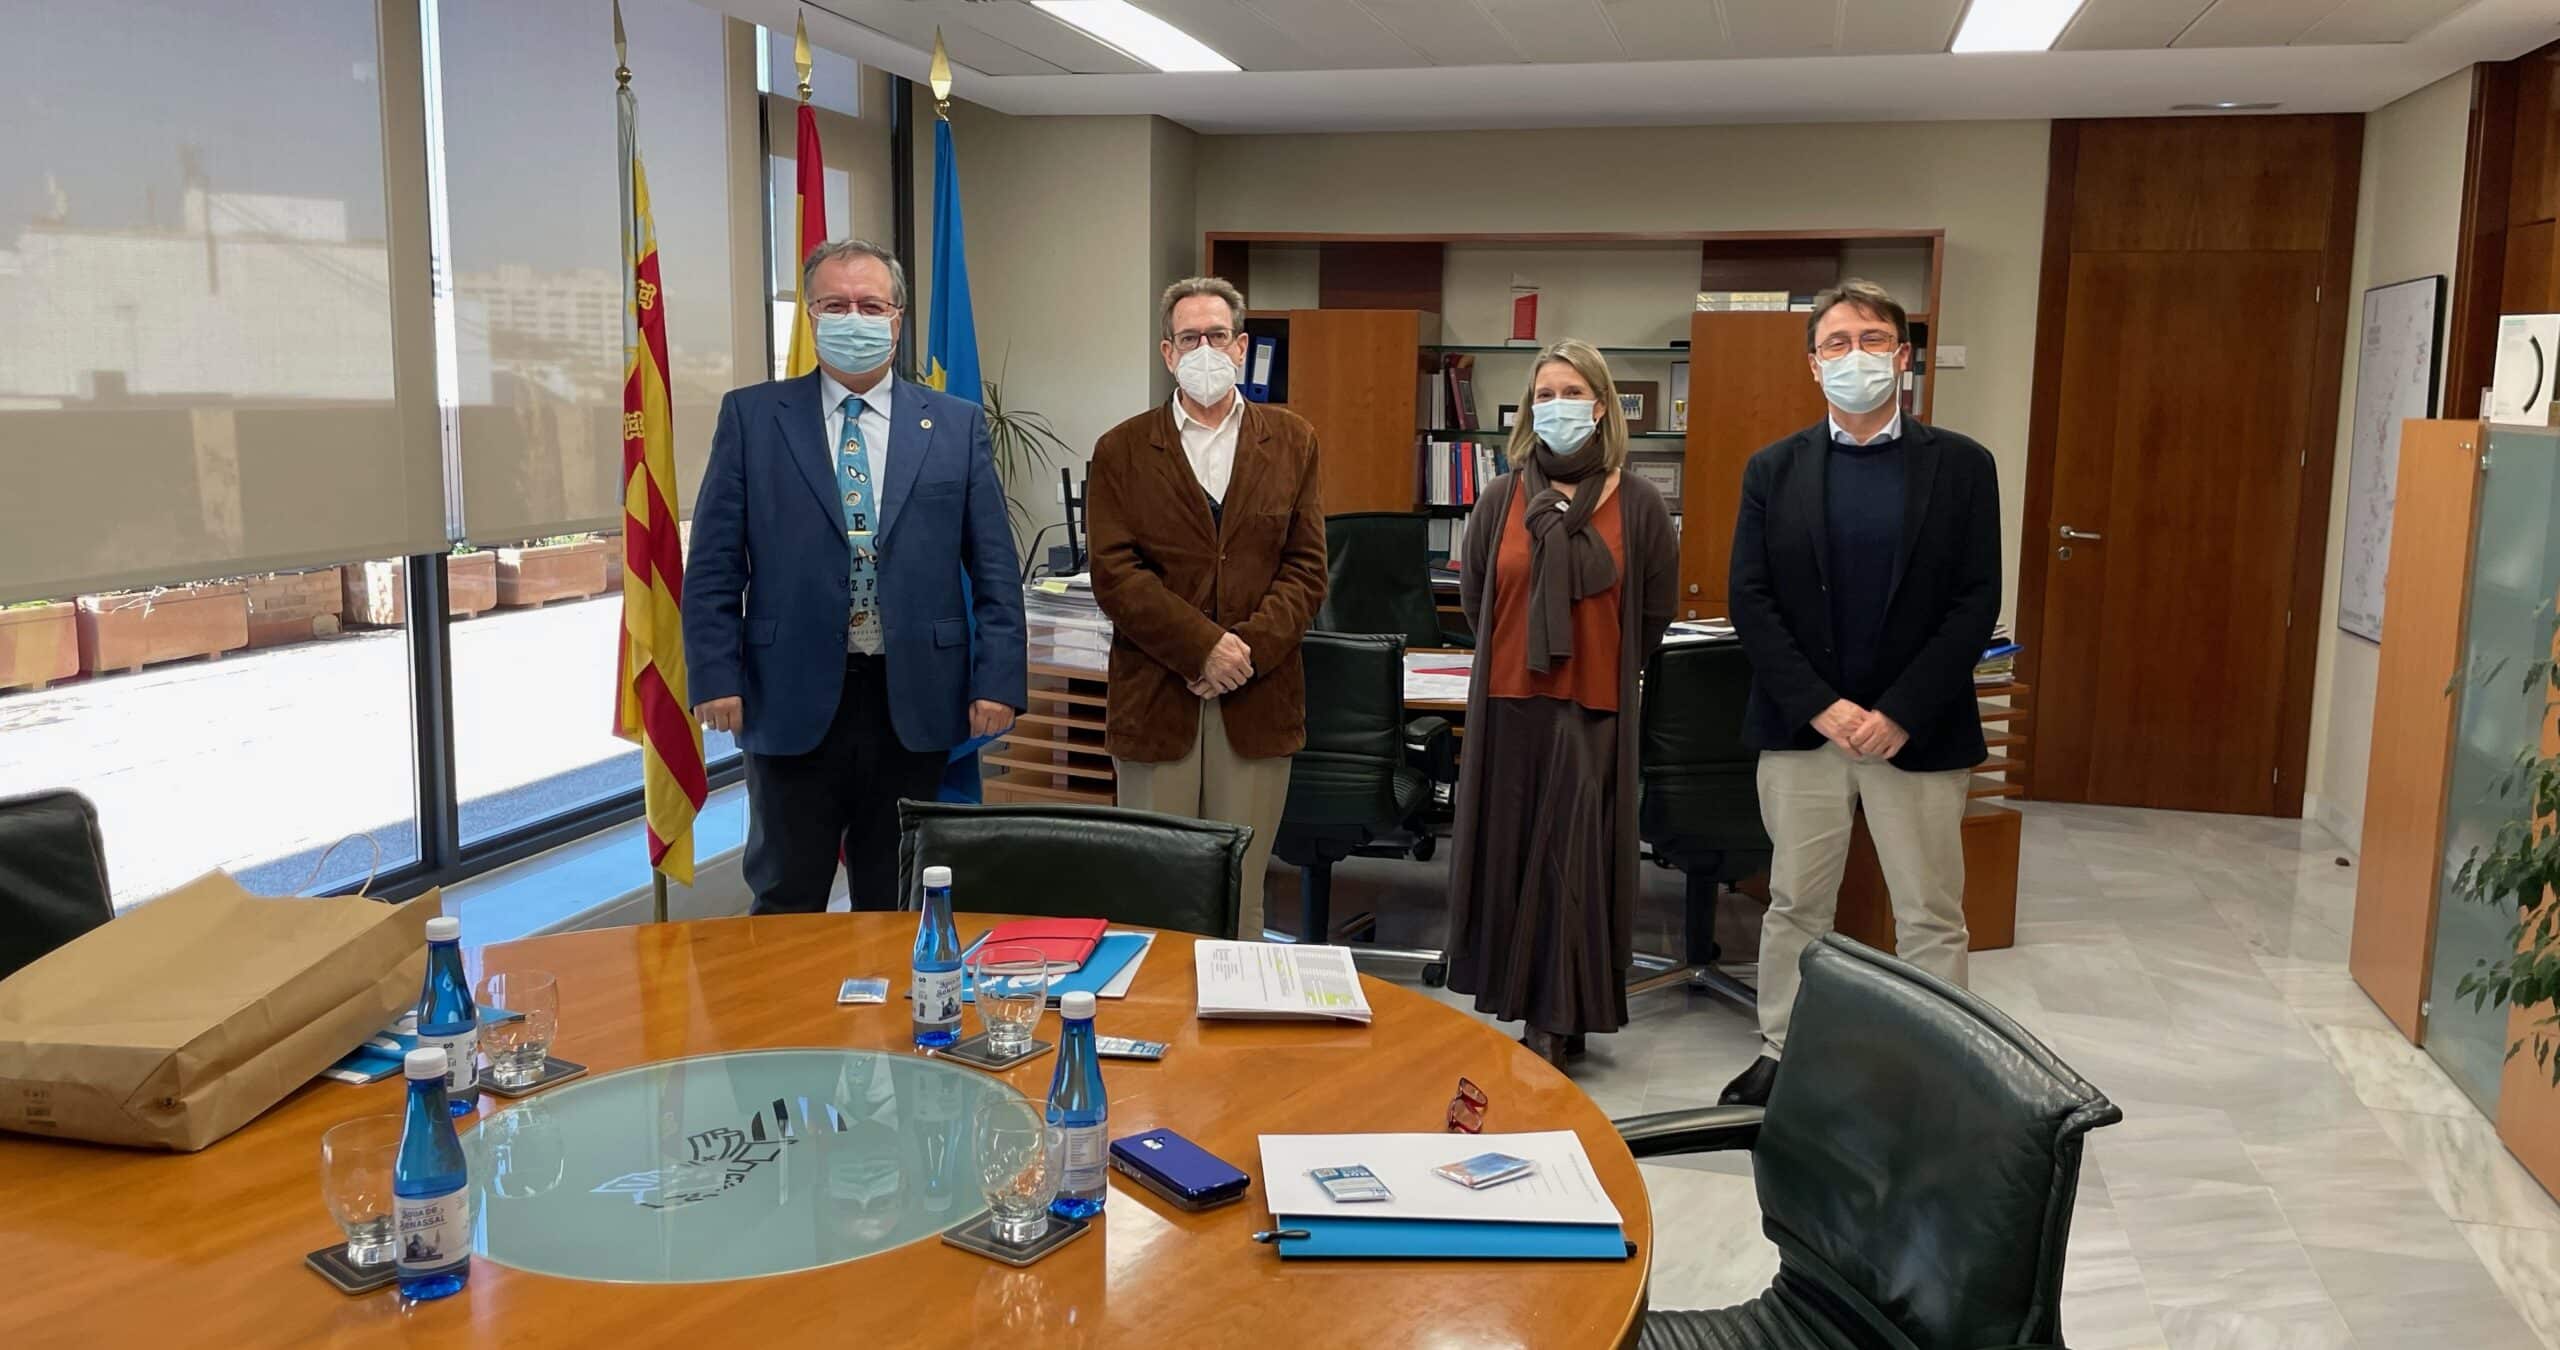 El presidente y el vicepresidente del COOCV se reúnen con el conseller de Sanitat para reclamar la inclusión de los ópticos-optometristas en la sanidad pública valenciana